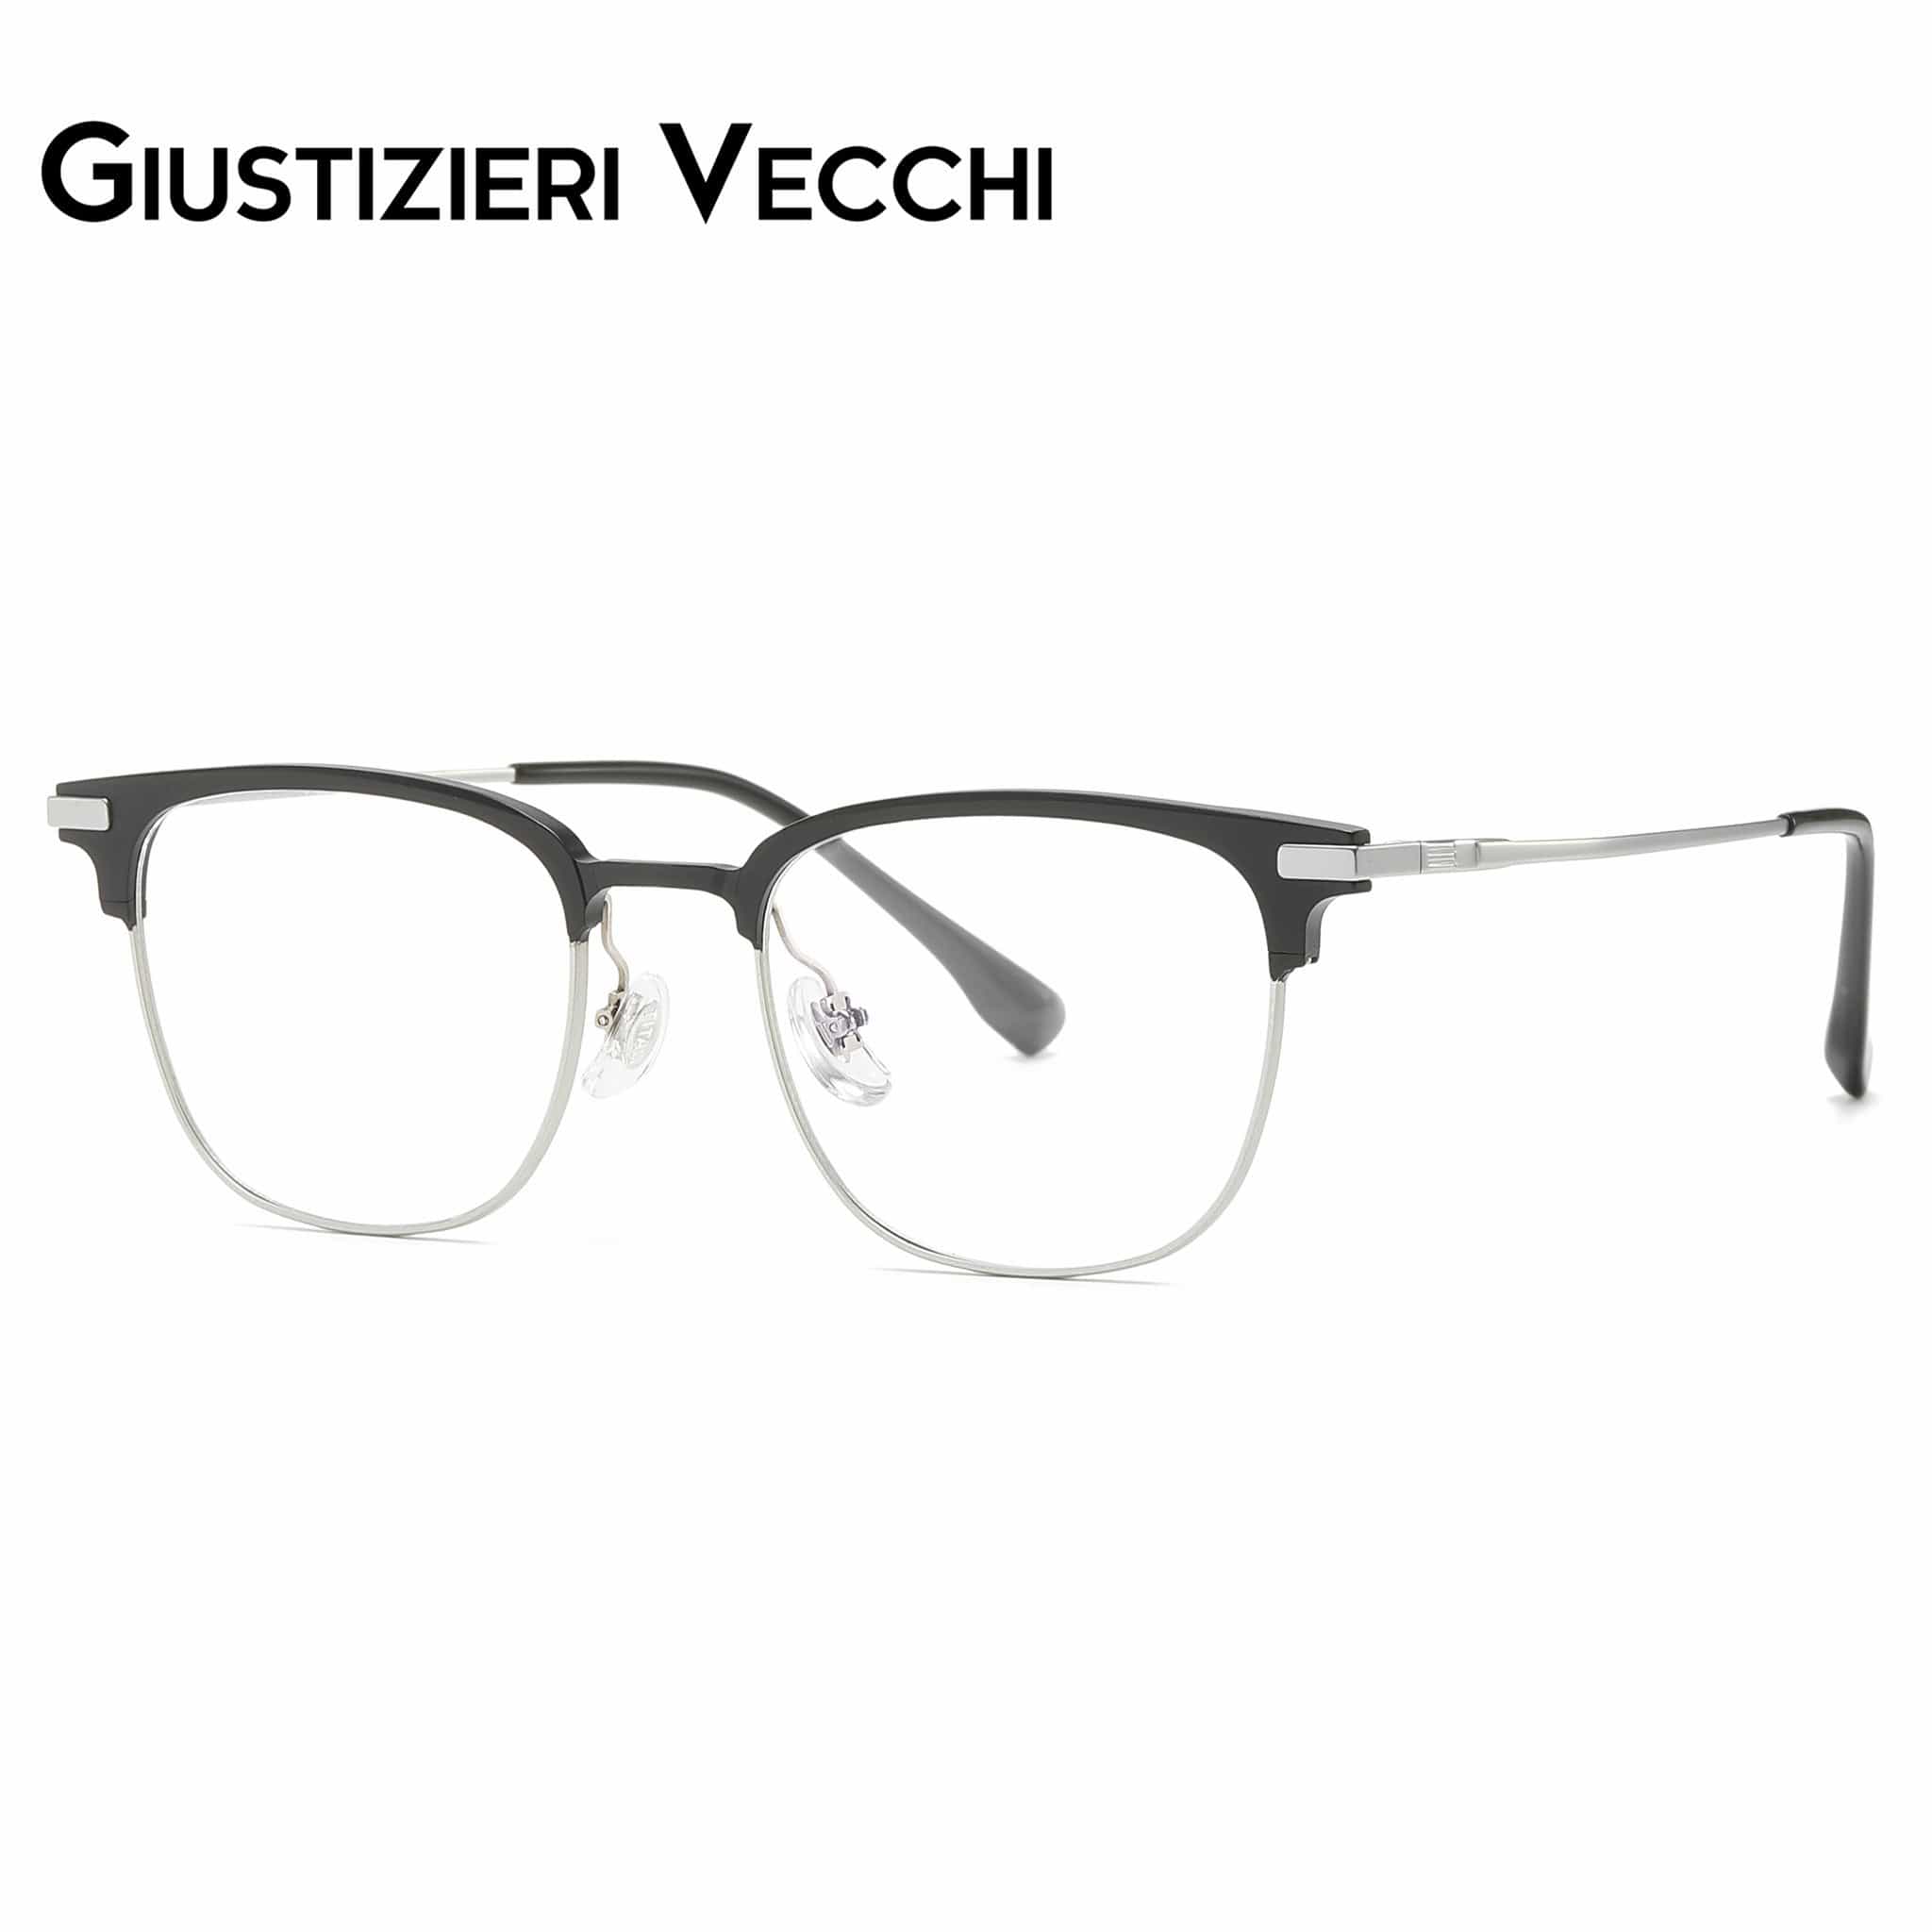 GIUSTIZIERI VECCHI Eyeglasses Small / Black with Silver FireRush Duo